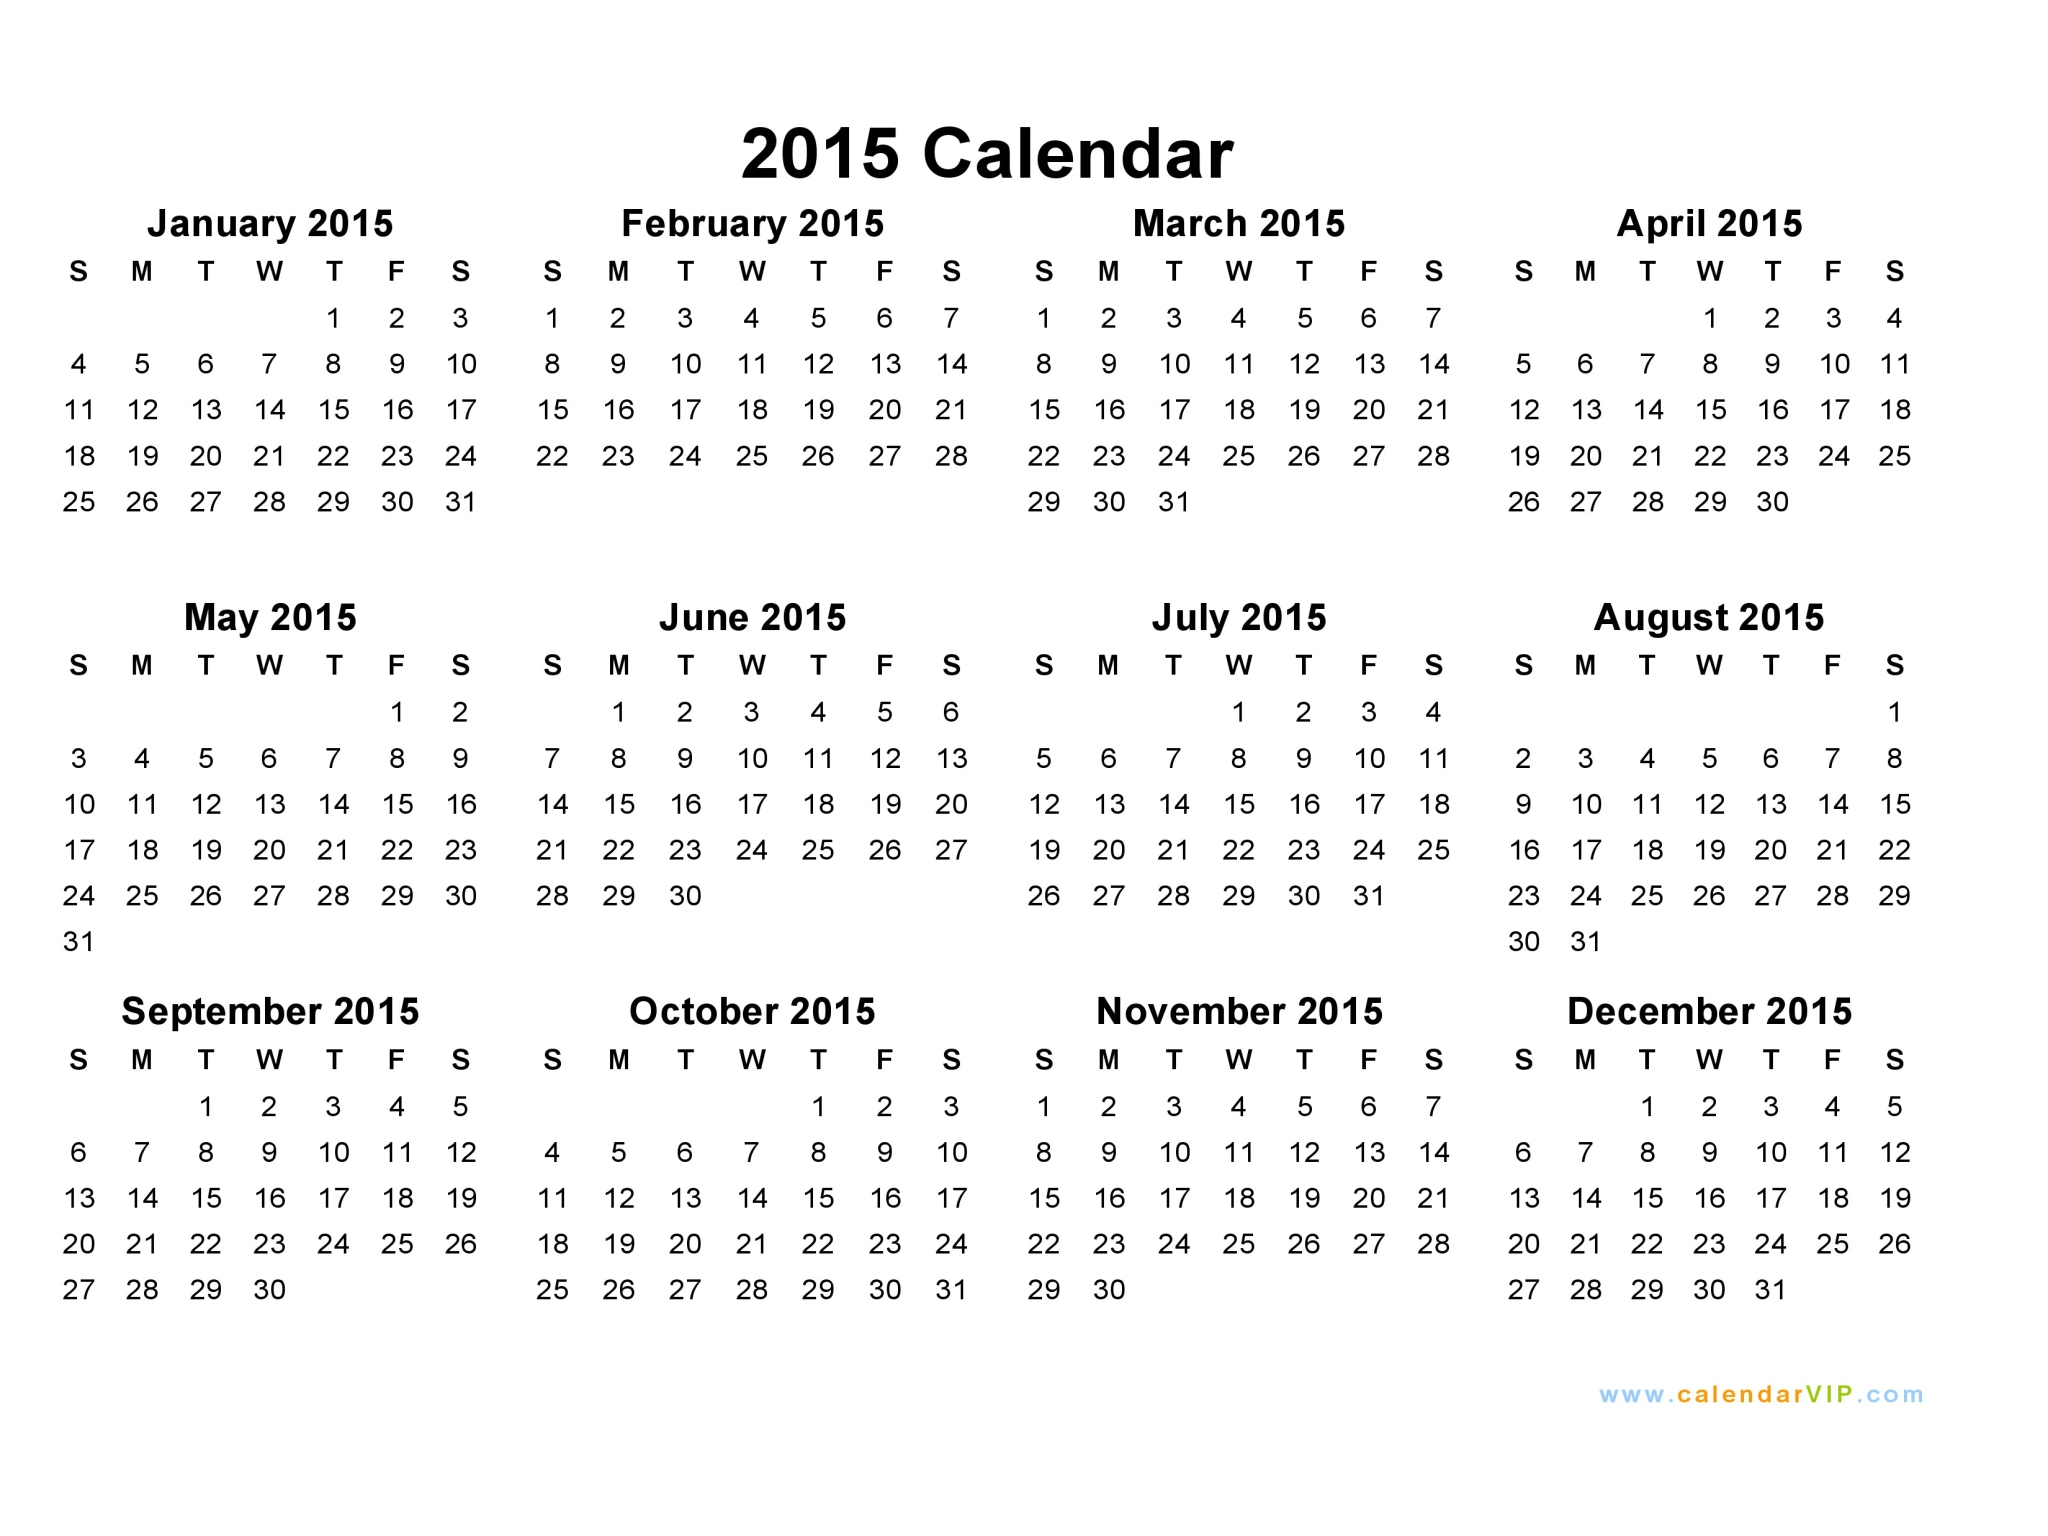 2015 Calendar - Blank Printable Calendar Template in PDF Word Excel